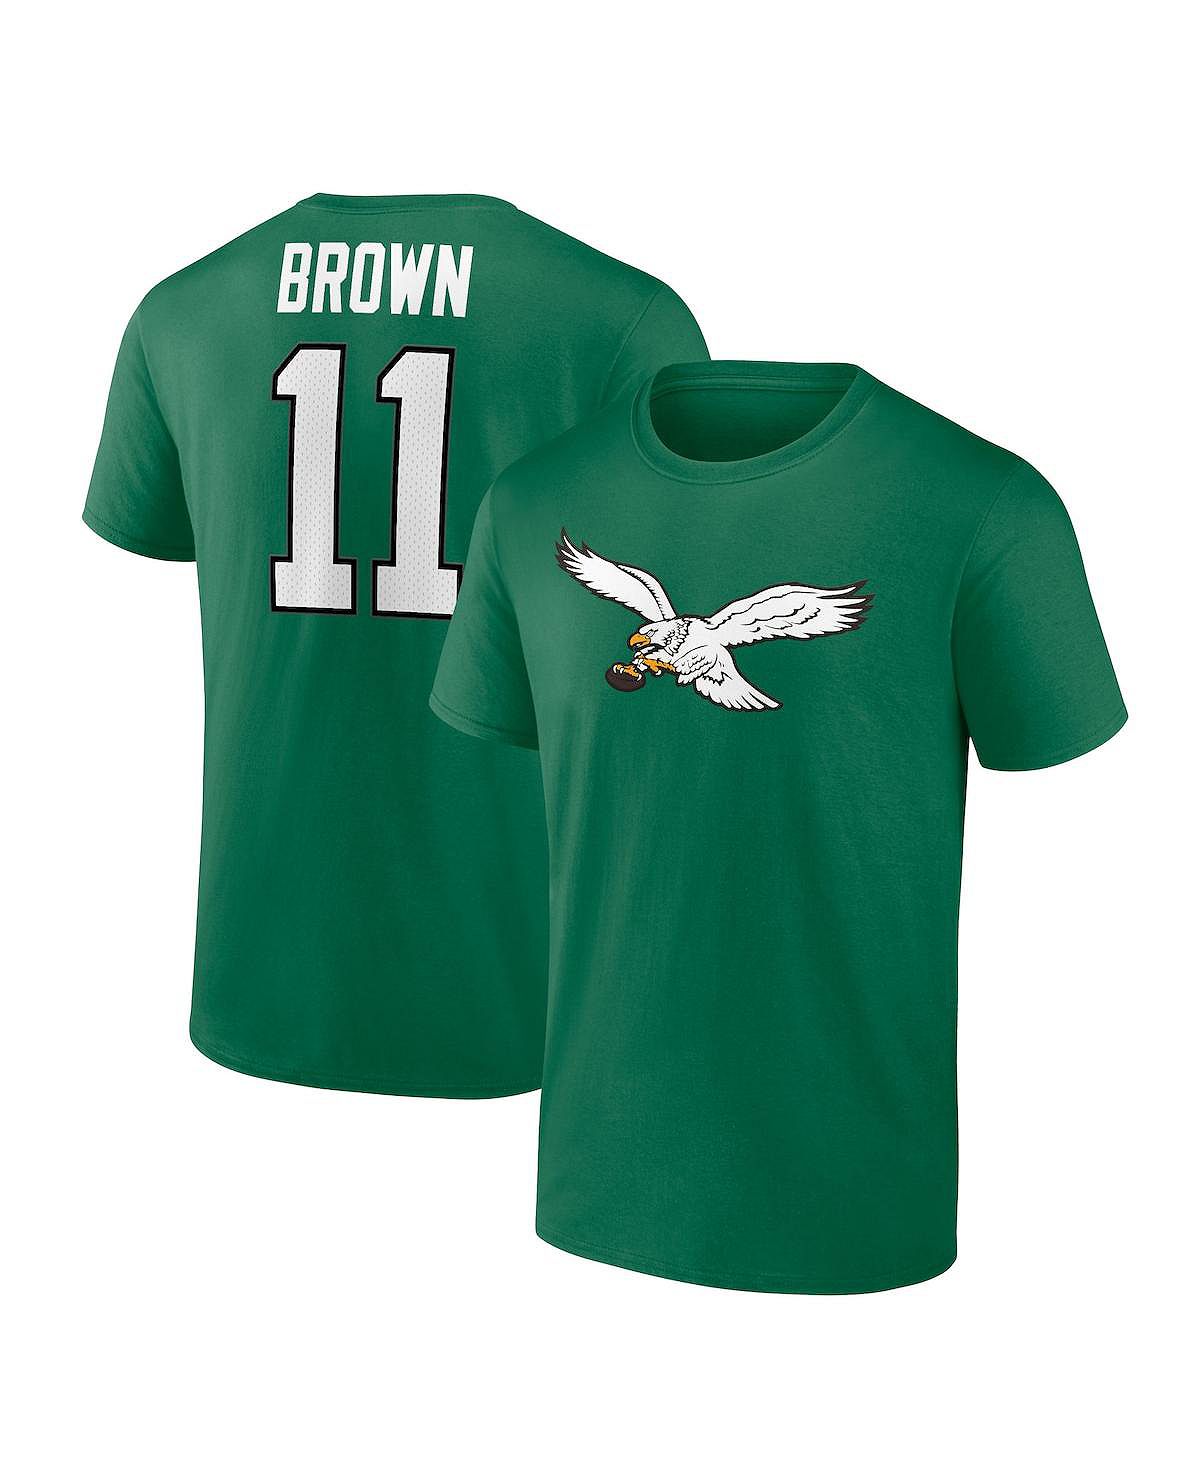 Мужская брендовая одежда A.J. Коричневая футболка Kelly Green Philadelphia Eagles со значком игрока, именем и номером Fanatics эй джей стайлз